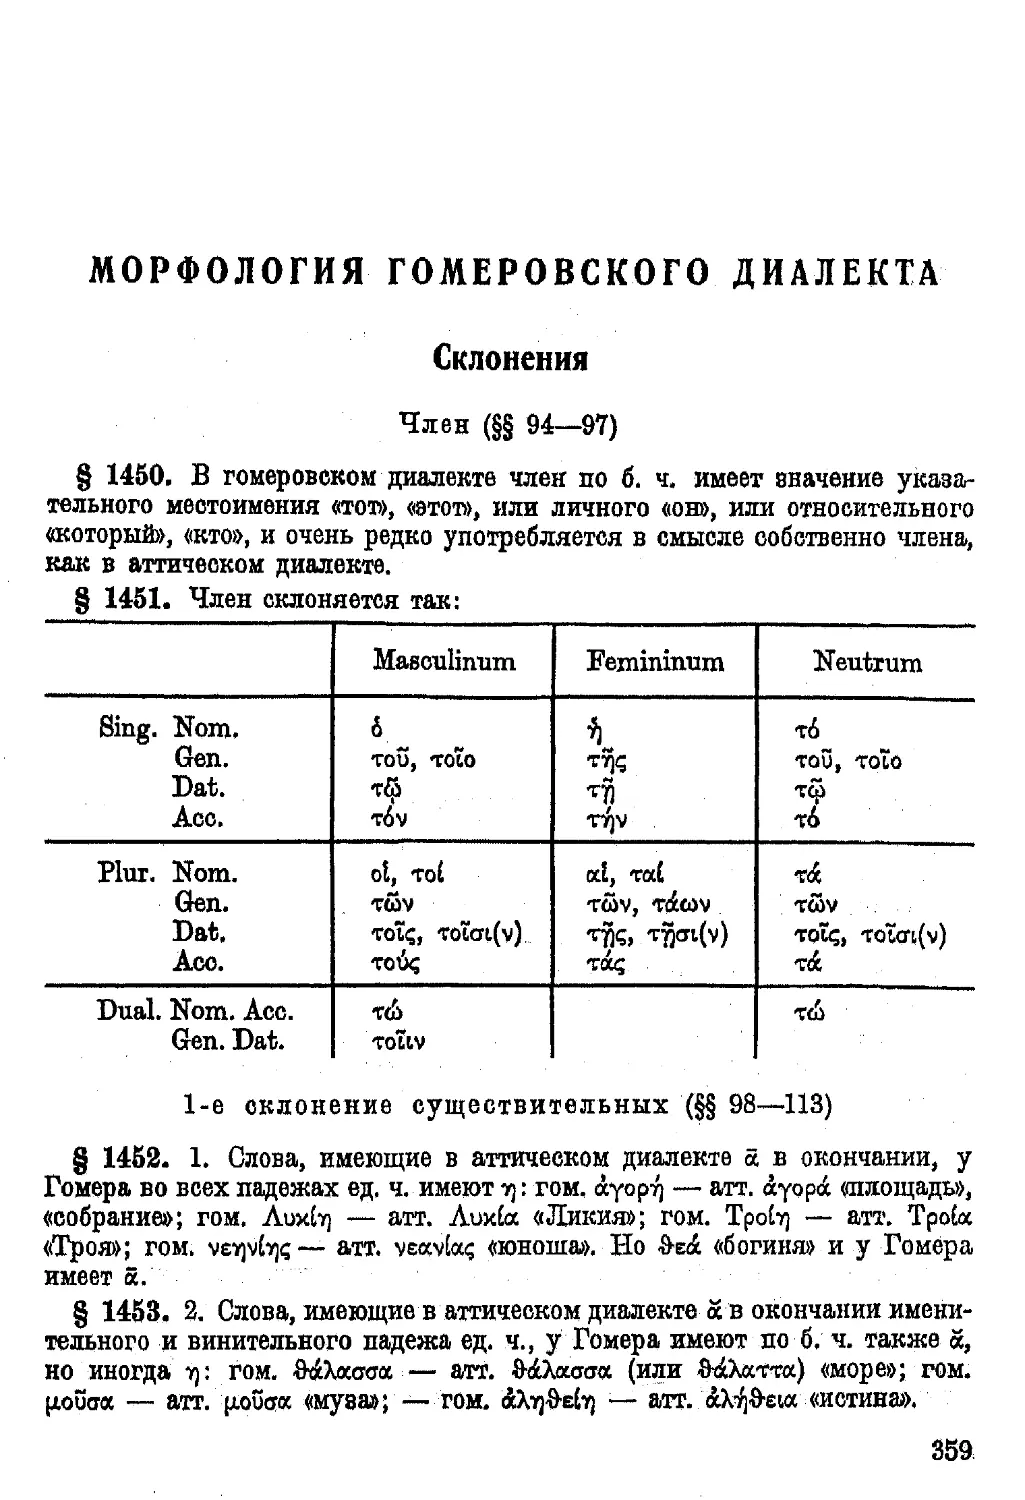 Морфология Гомеровского диалекта.